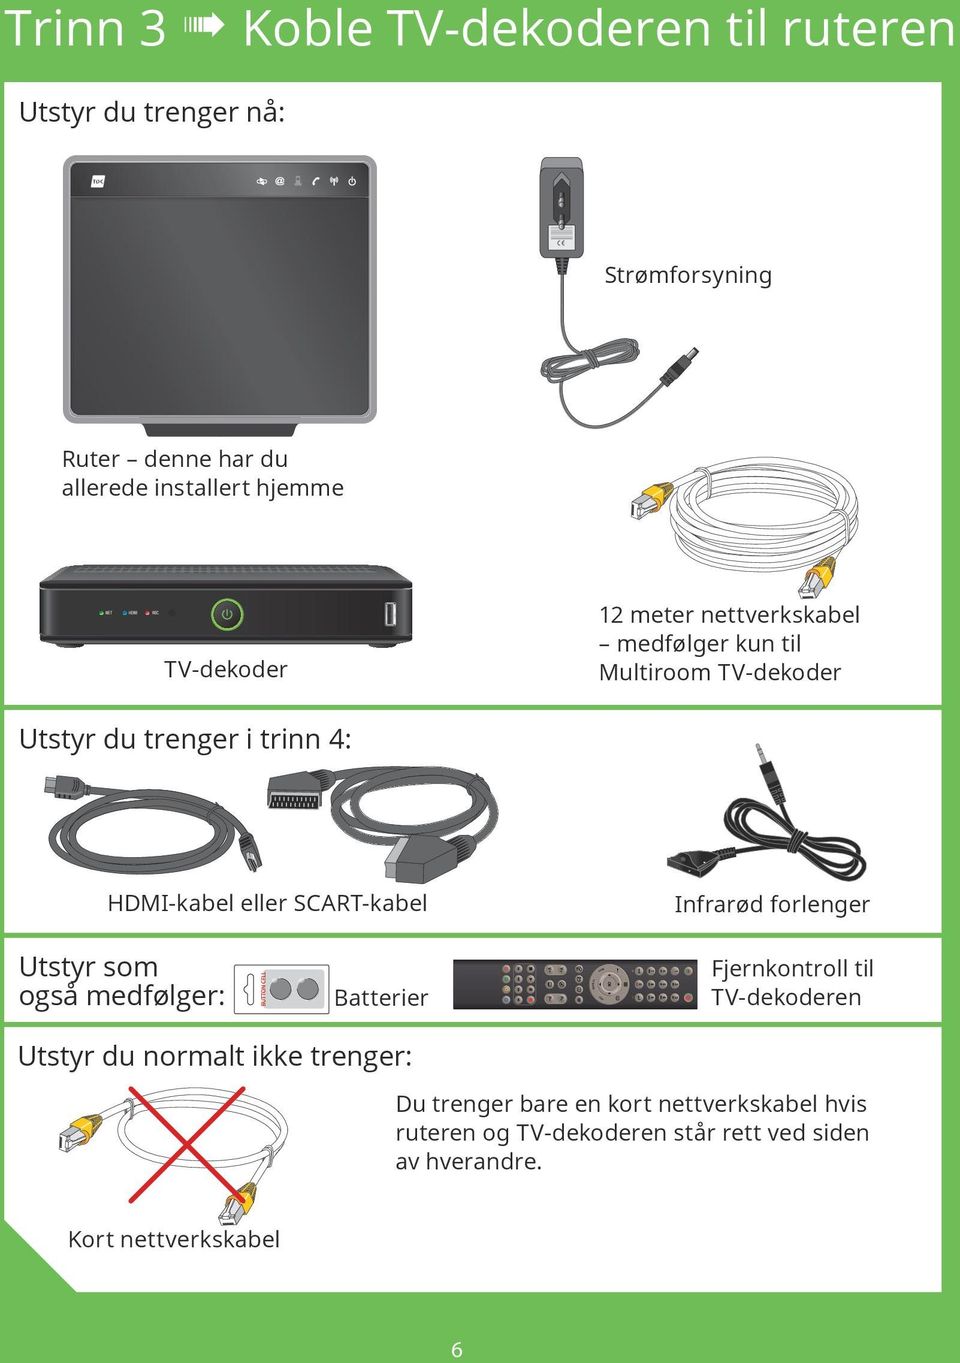 HDMI-kabel eller SCART-kabel Utstyr som også medfølger: Infrarød forlenger Fjernkontroll til TV-dekoderen Batterier Utstyr du